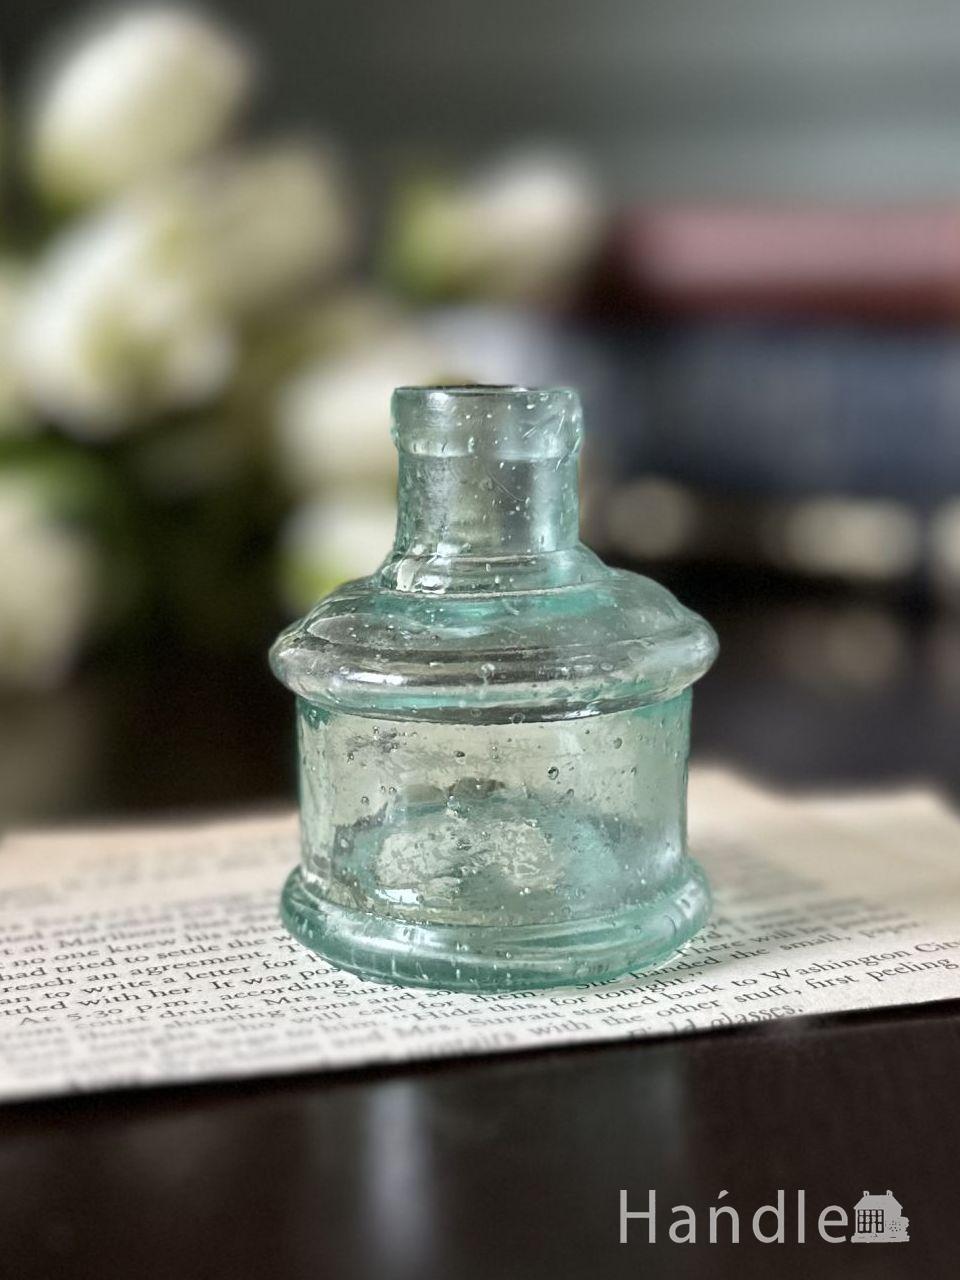 アンティークガラスのおしゃれな雑貨、丸い形のヴィクトリアンインク瓶